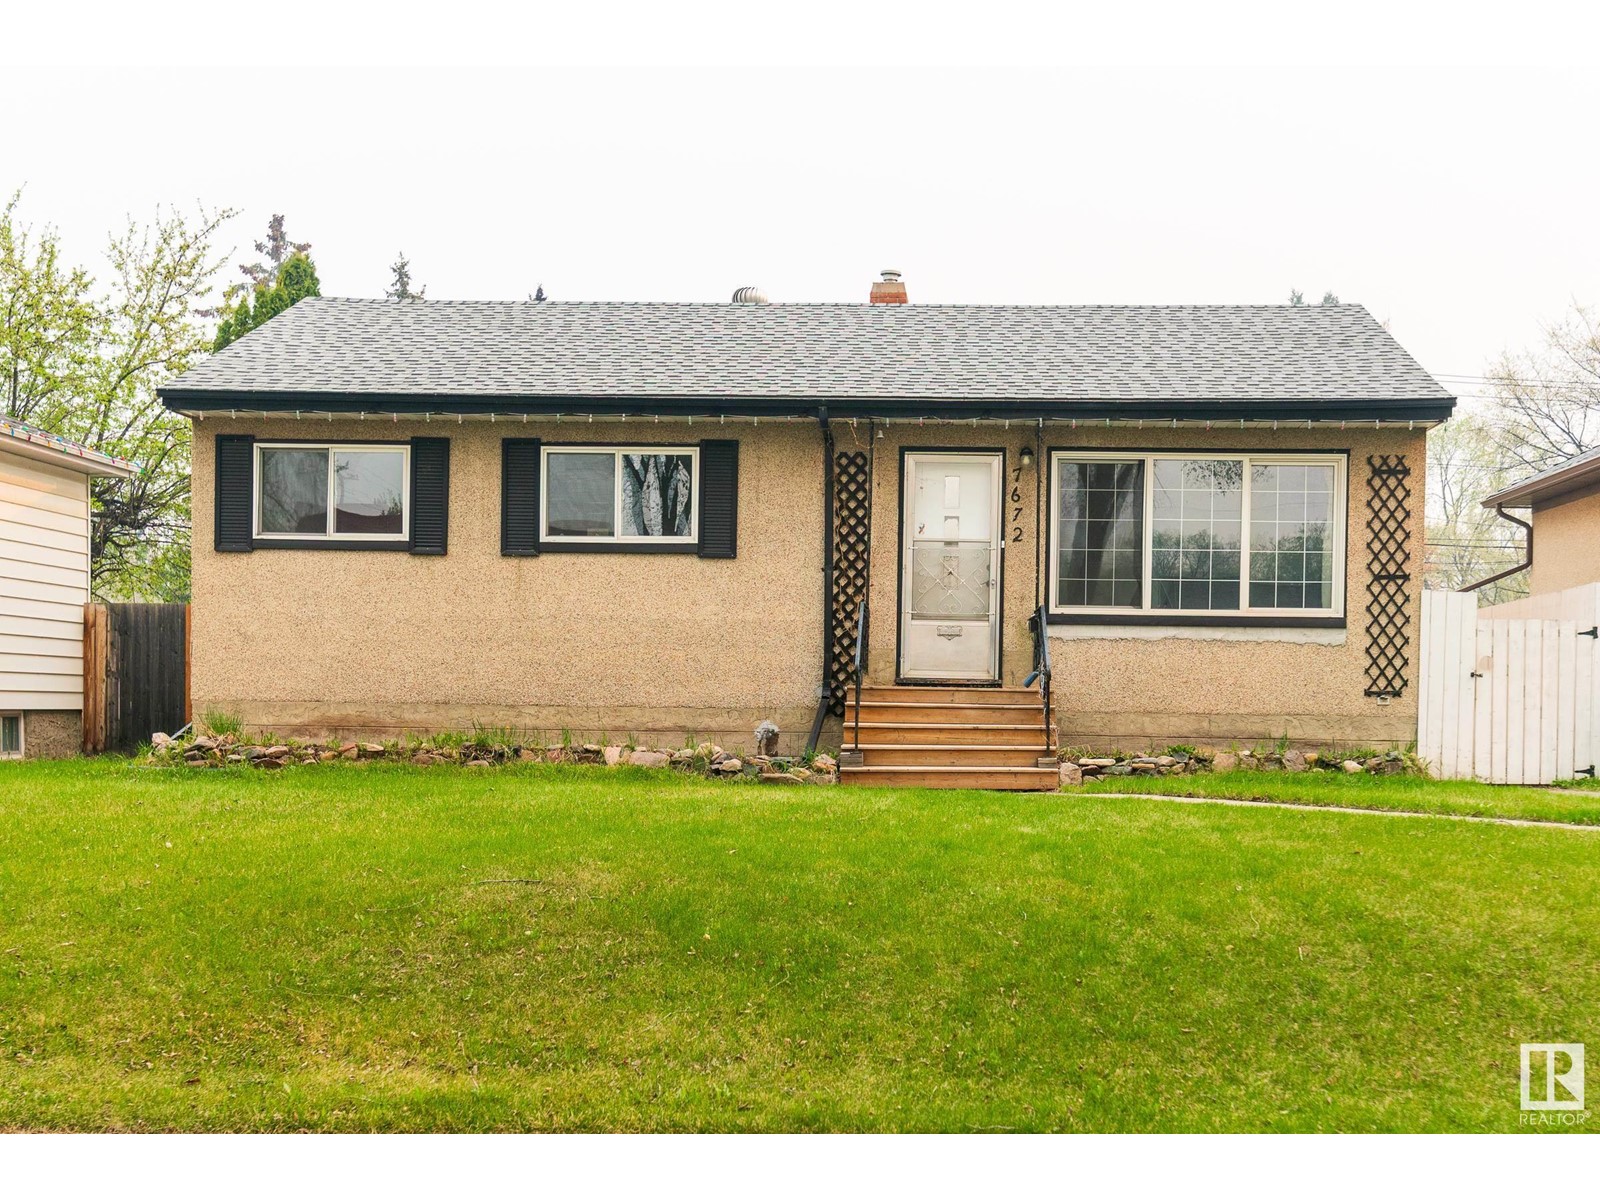 5 Bedroom Residential Home For Sale | 7672 89 Av Nw | Edmonton | T6C1N3